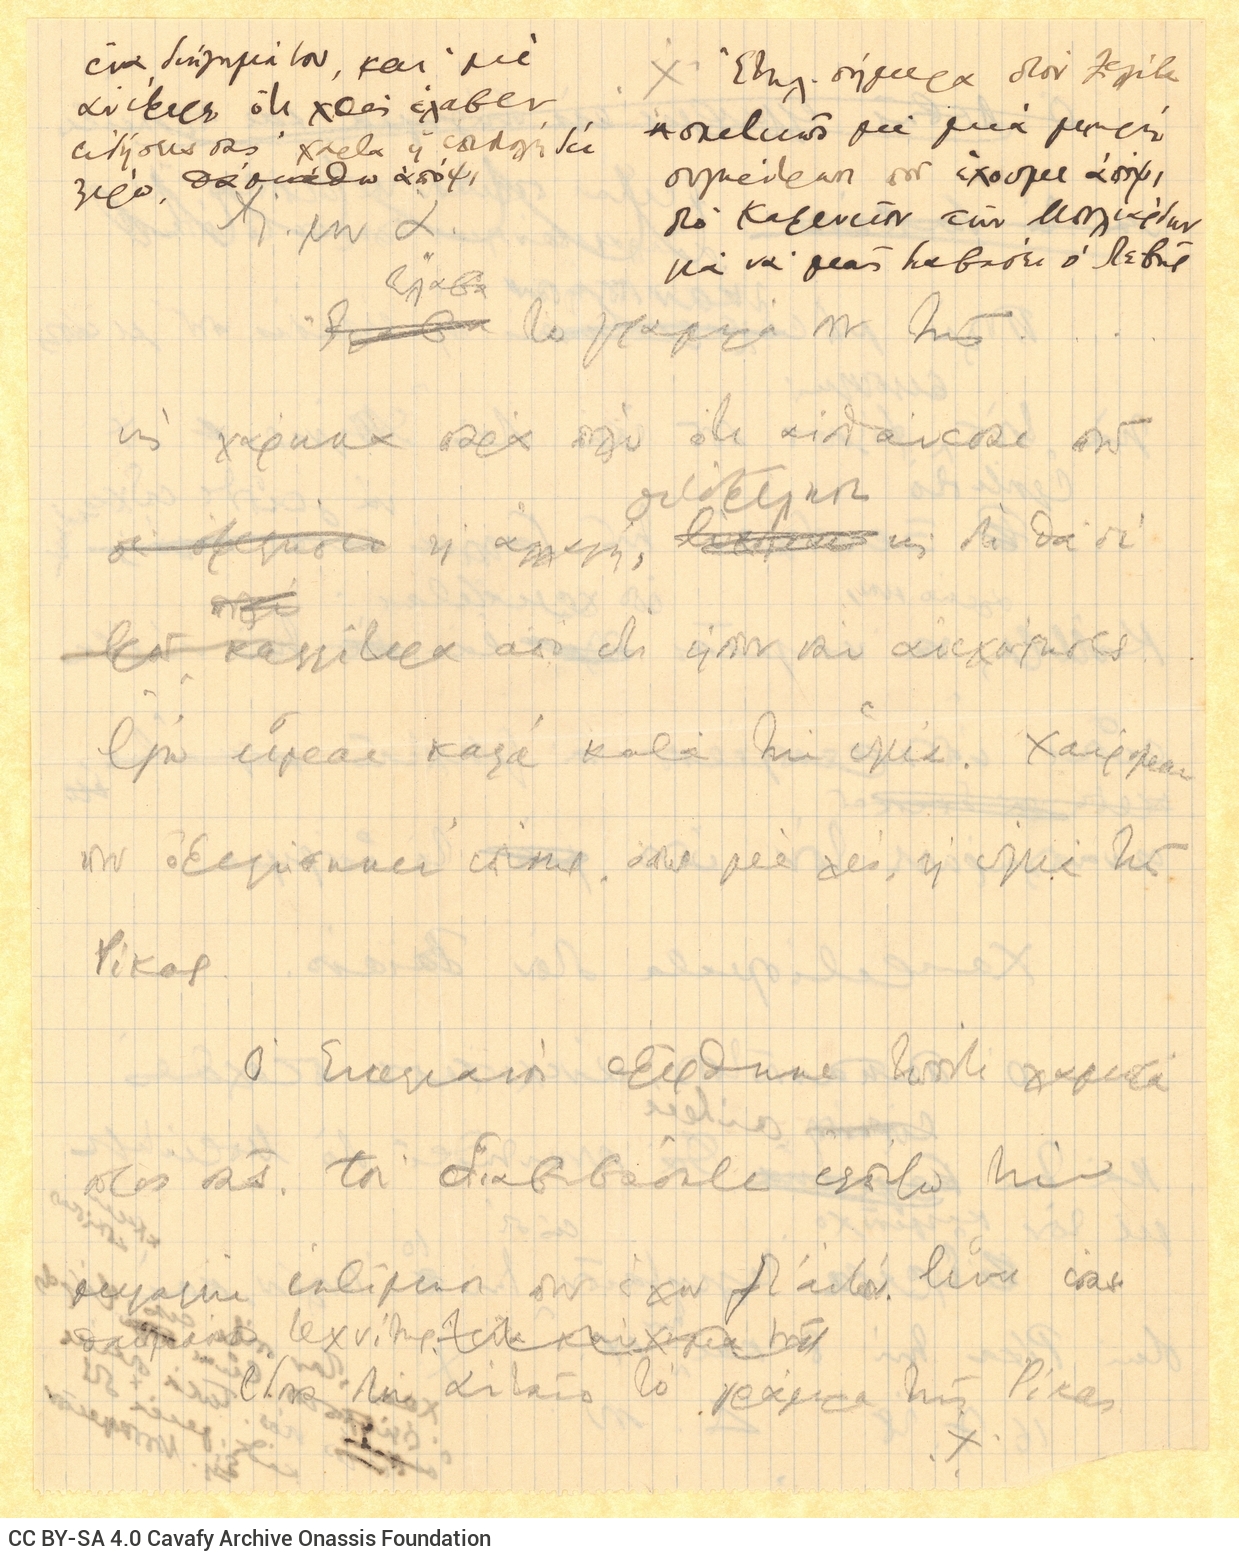 Χειρόγραφο σχέδιο επιστολής του Καβάφη προς τον Α[λέκο Σεγκόπουλο] σ